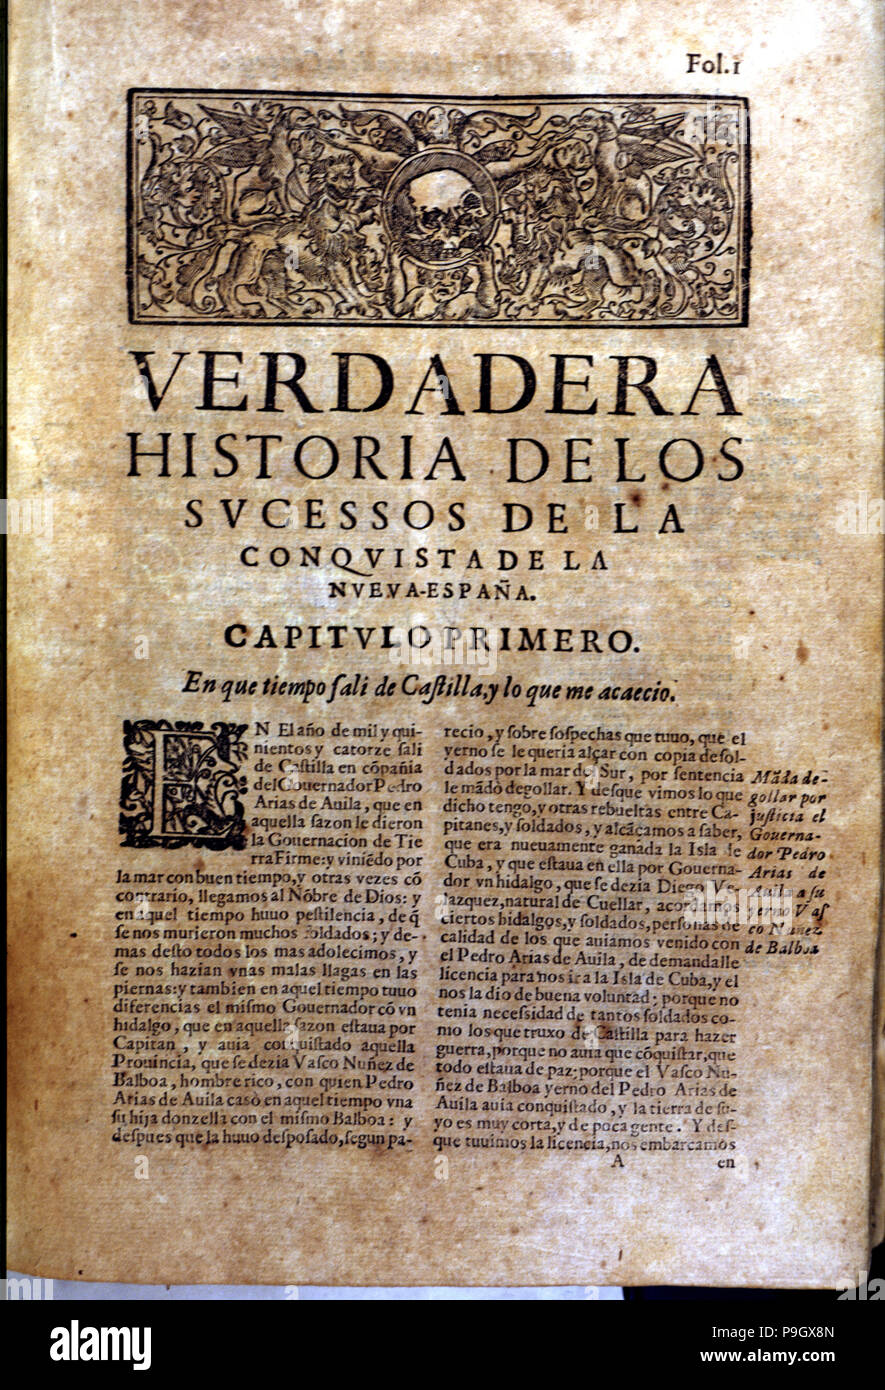 Front page of the book 'Historia verdadera de la conquista de la Nueva España' (True story of the… Stock Photo